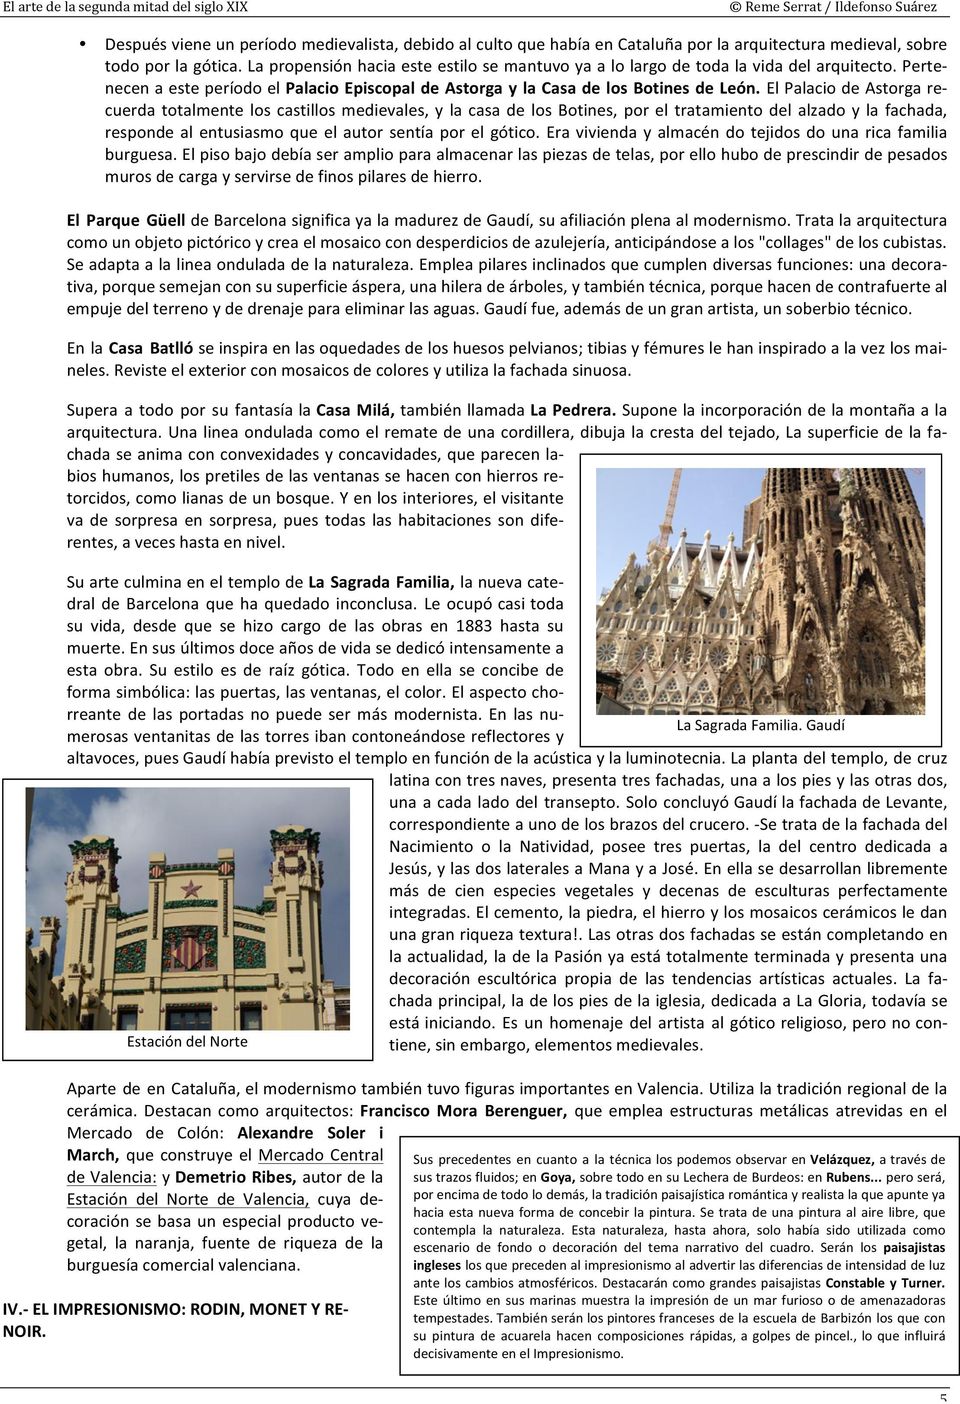 El Palacio de Astorga re- cuerda totalmente los castillos medievales, y la casa de los Botines, por el tratamiento del alzado y la fachada, responde al entusiasmo que el autor sentía por el gótico.